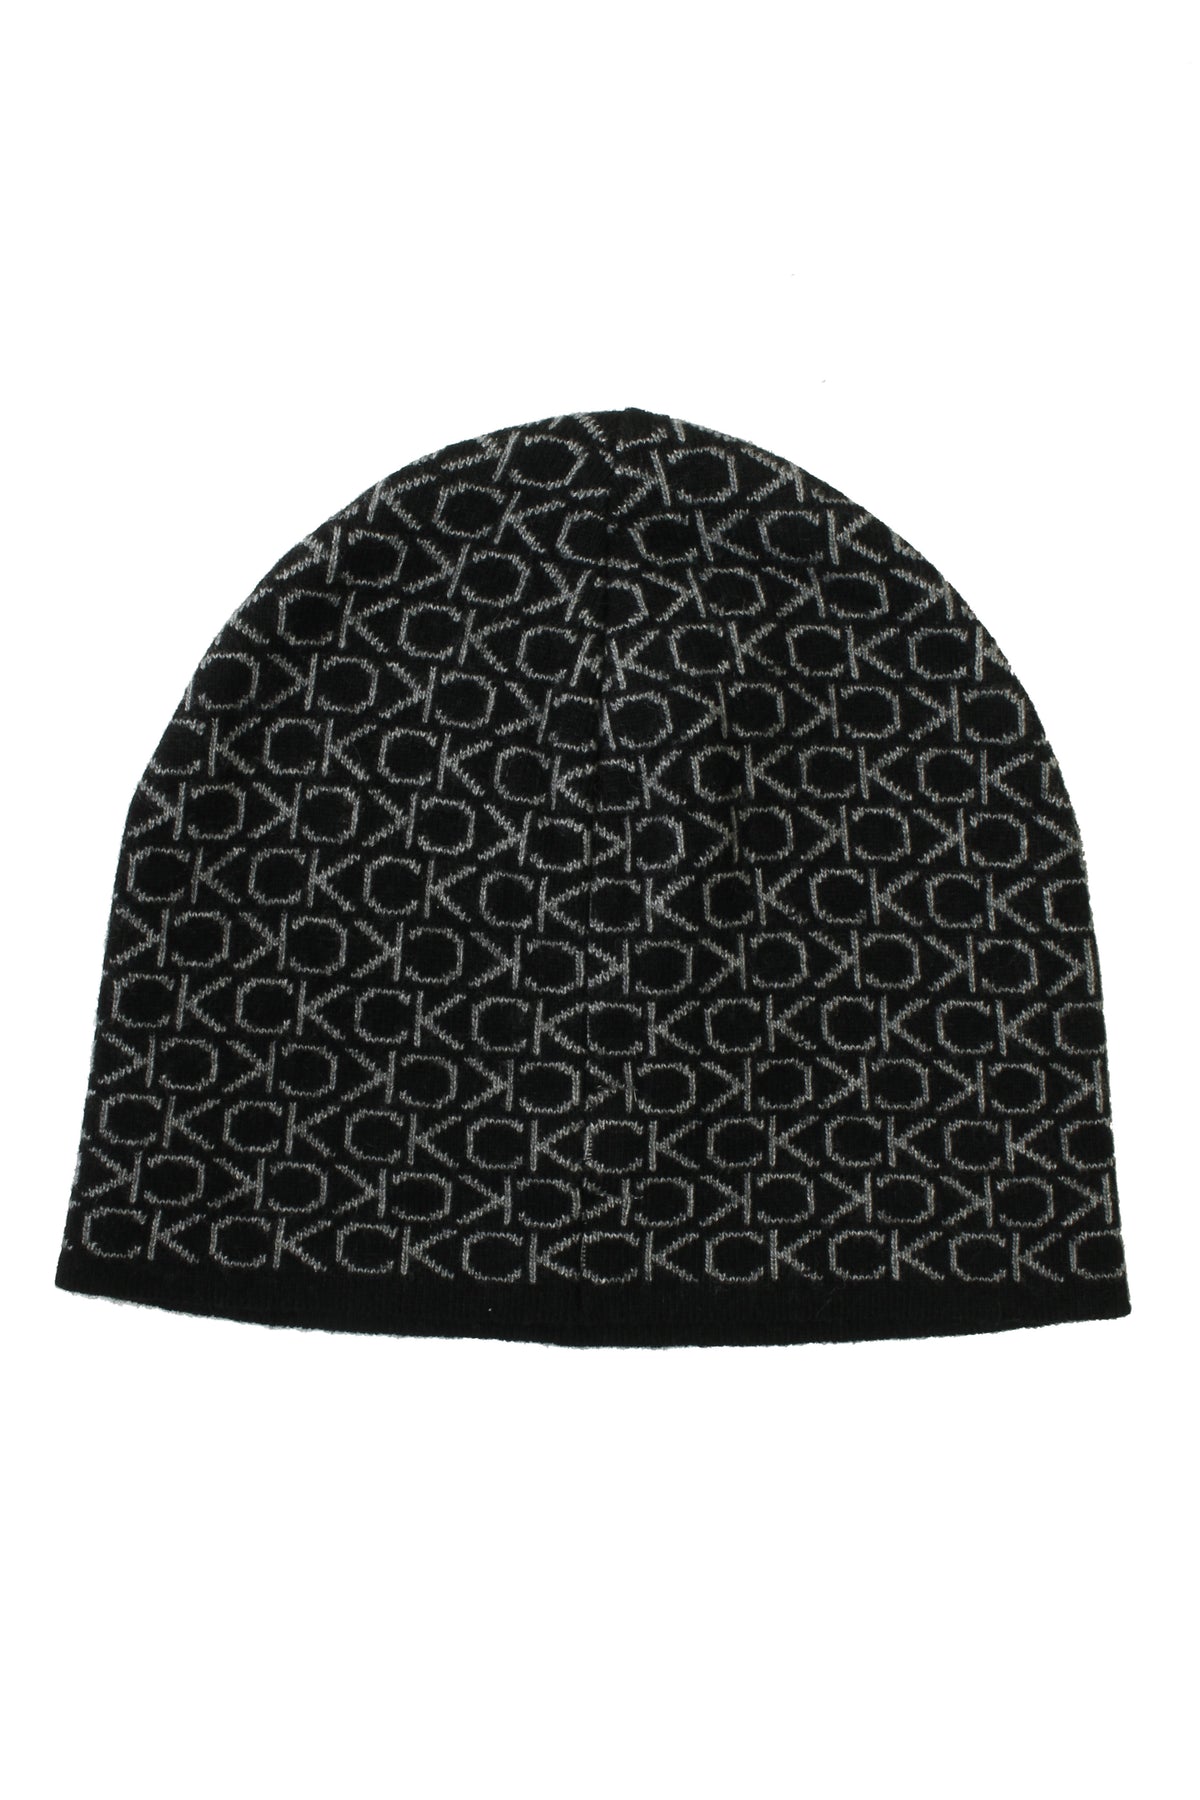 Calvin Klein Mens CK Monogram Wool No Fold Beanie Hat (Ck Black, One Size), 02, K50K509689, Ck Black